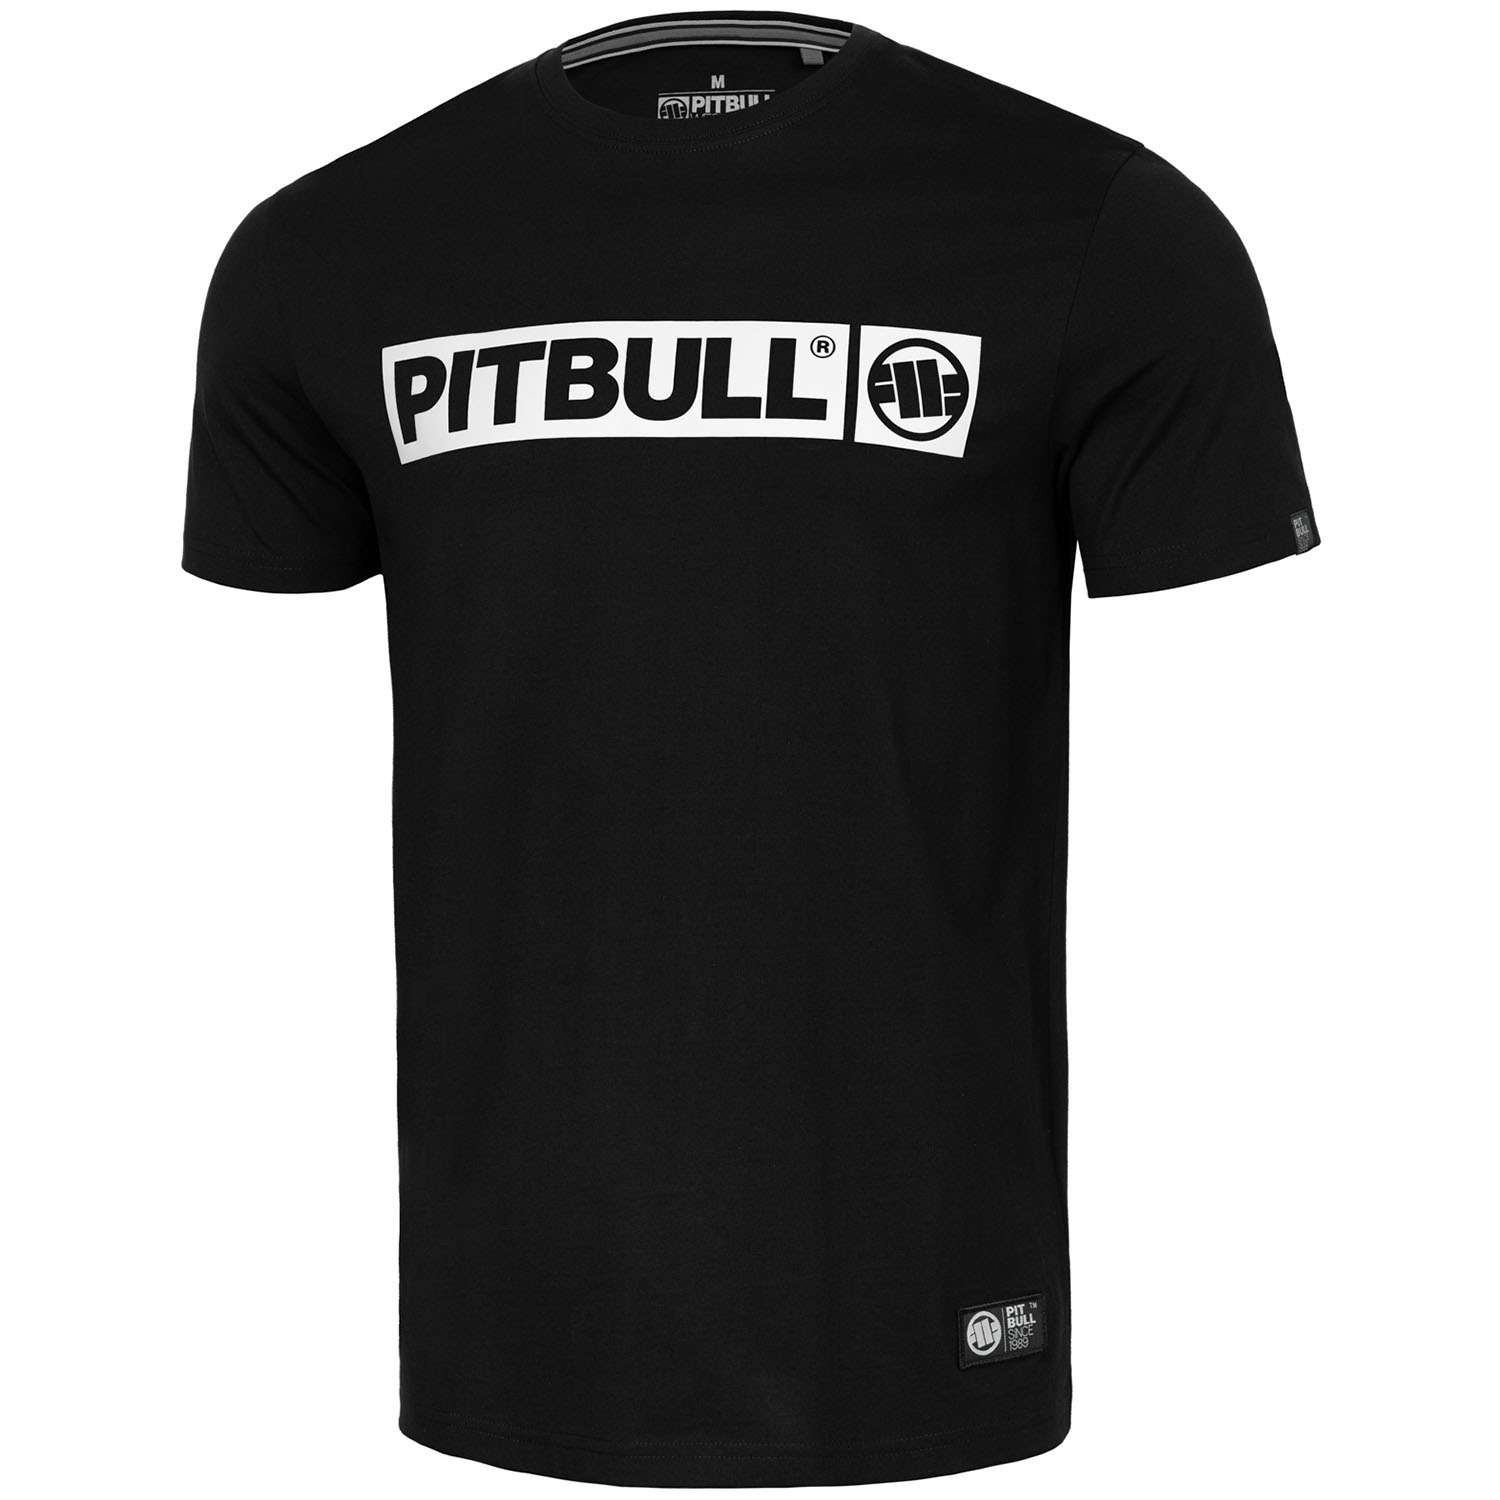 Pit Bull West Coast T-Shirt, Hilltop S70, black